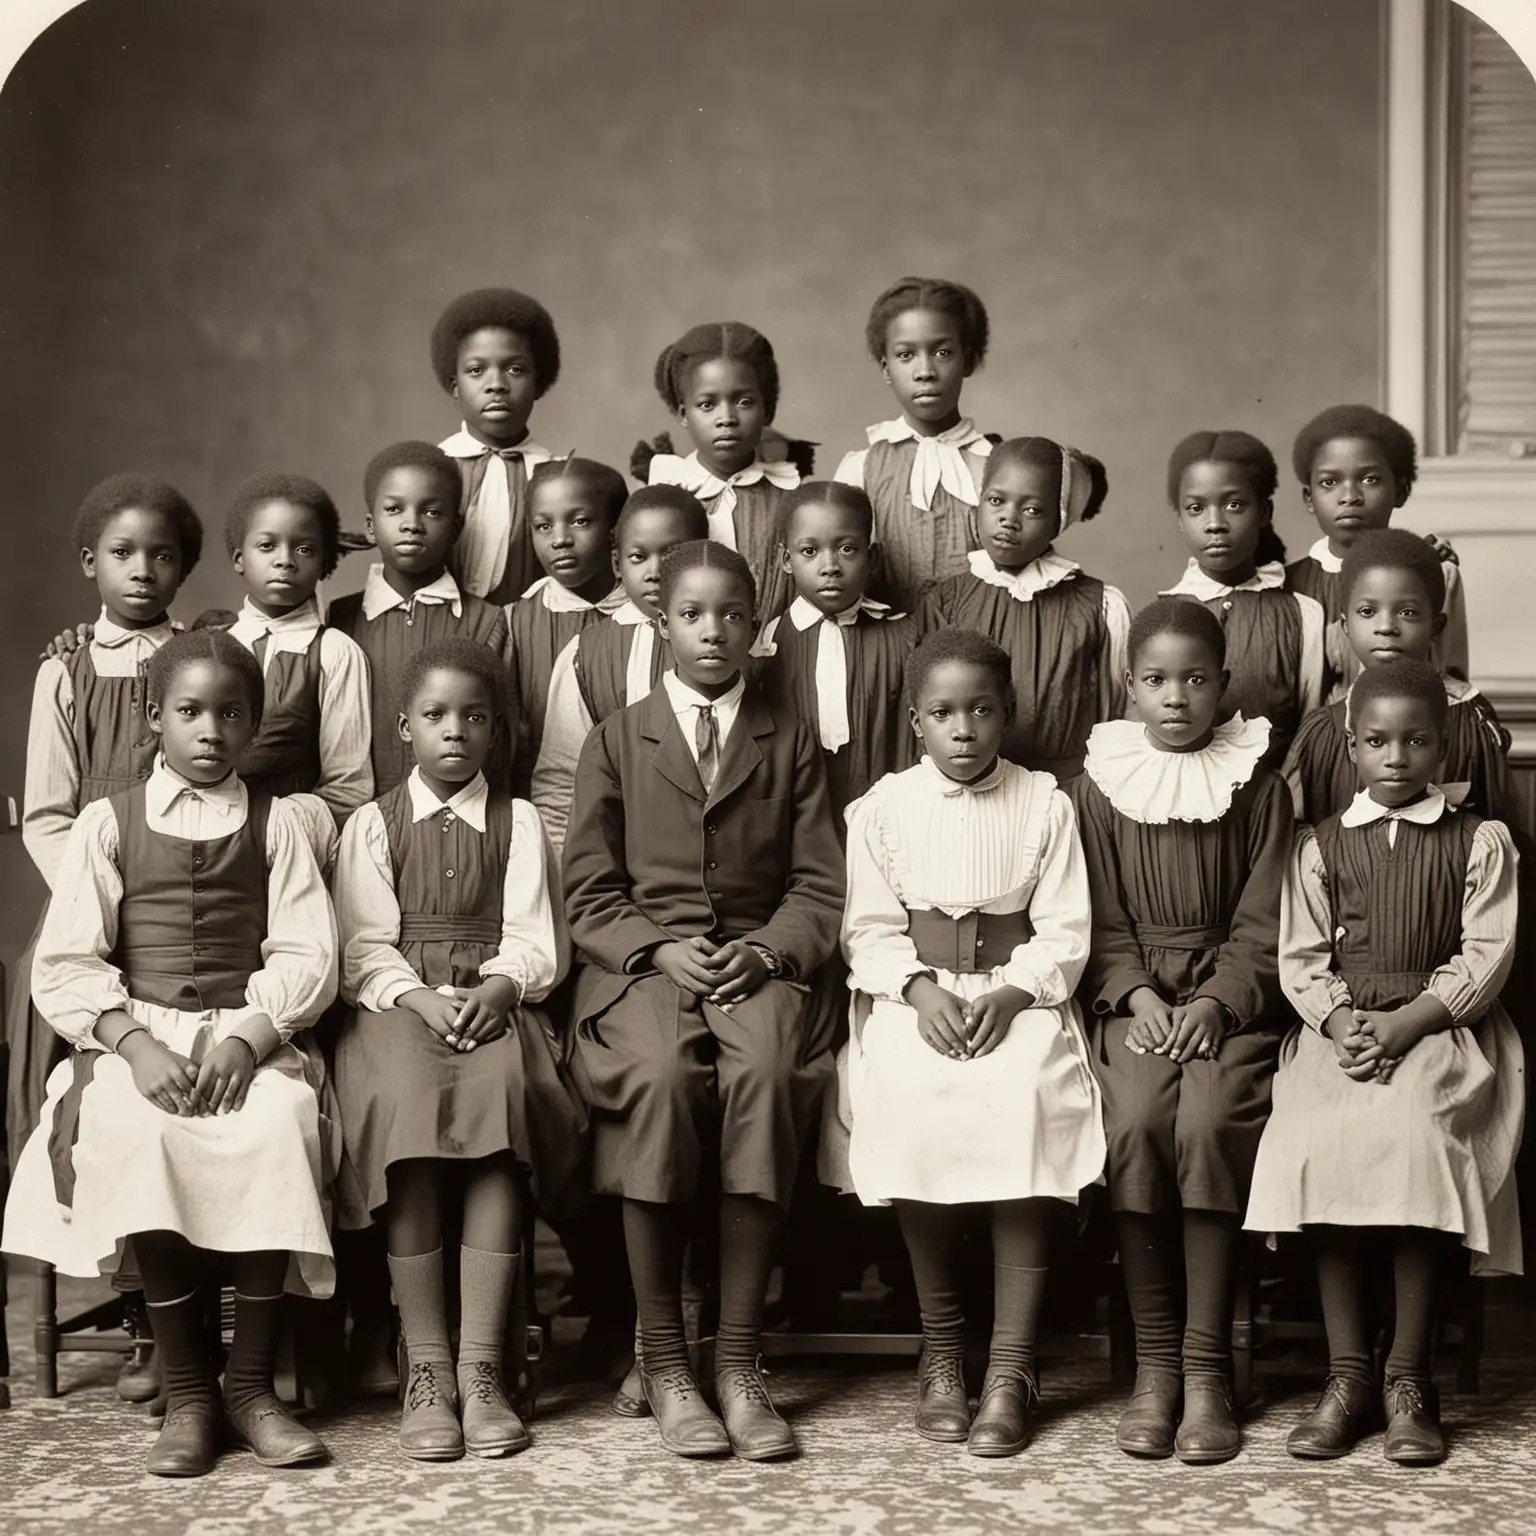 AfricanAmerican School Children in 1878